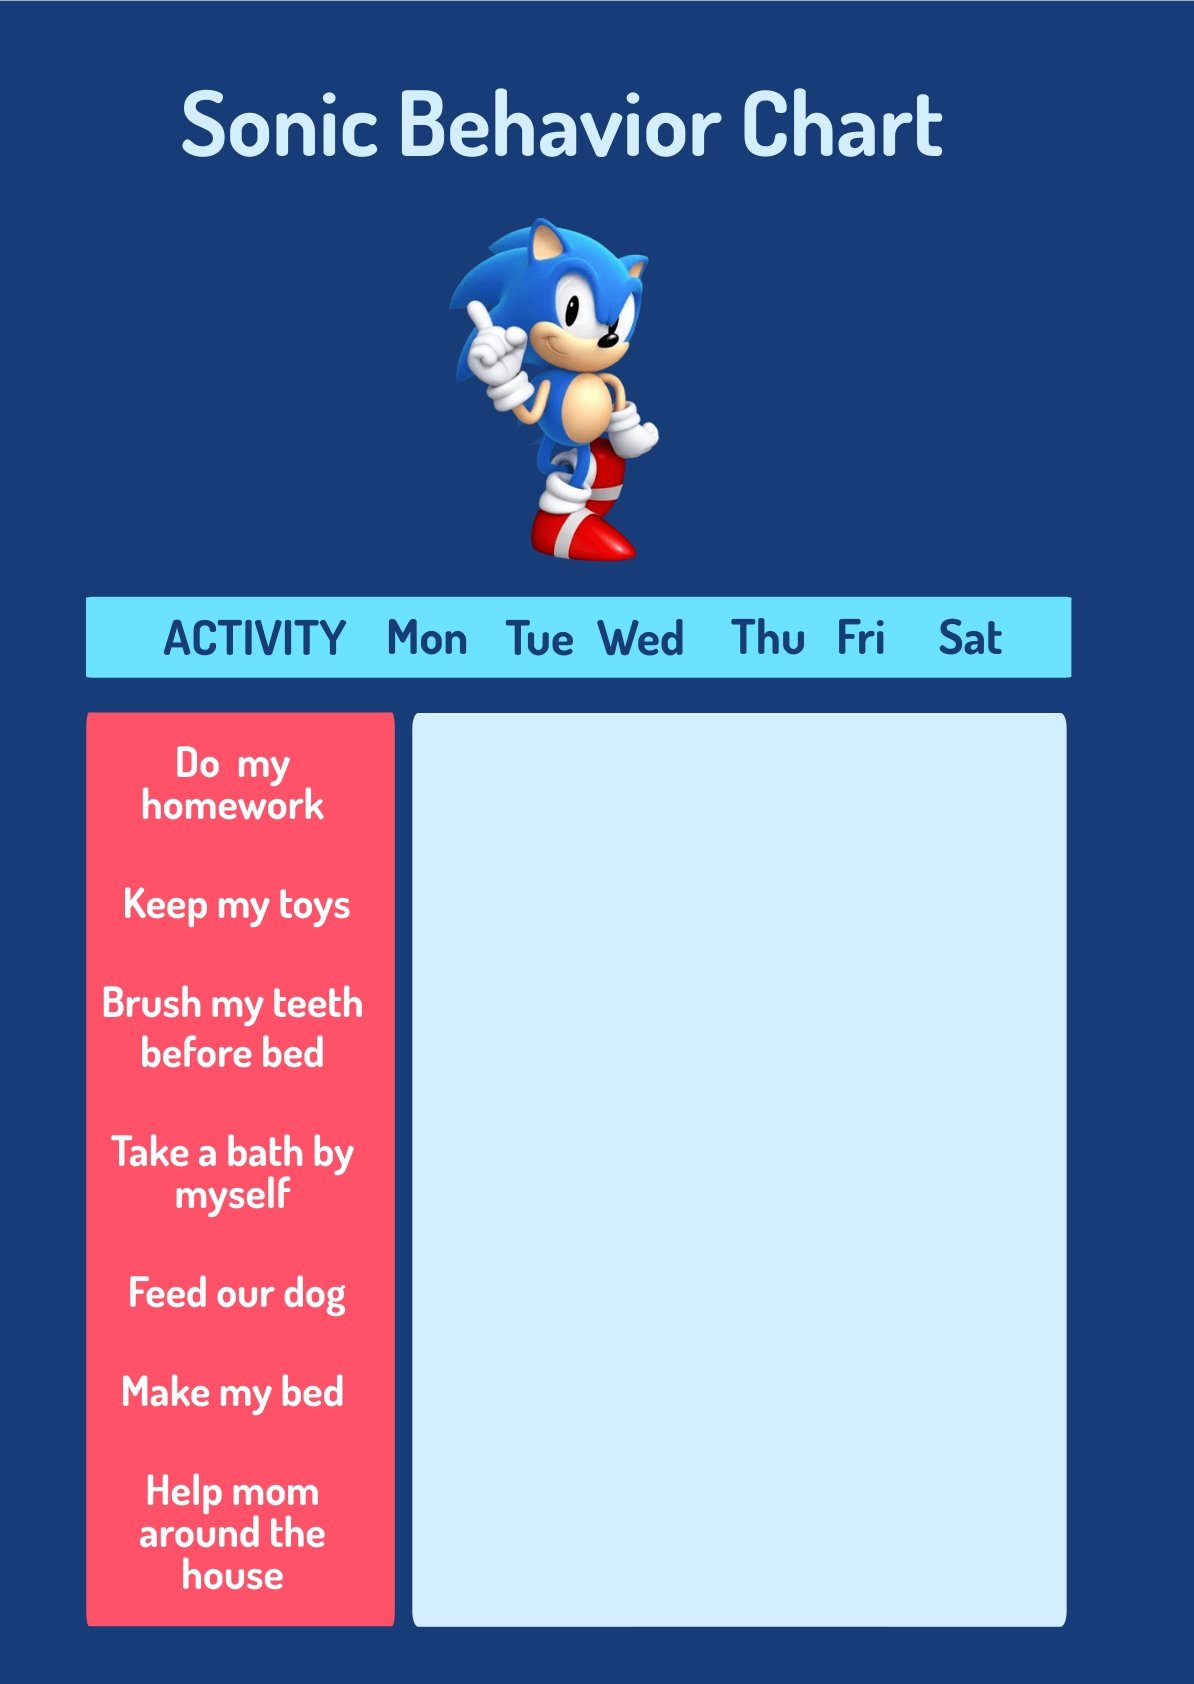 Sonic Behavior Chart in PDF, Illustrator